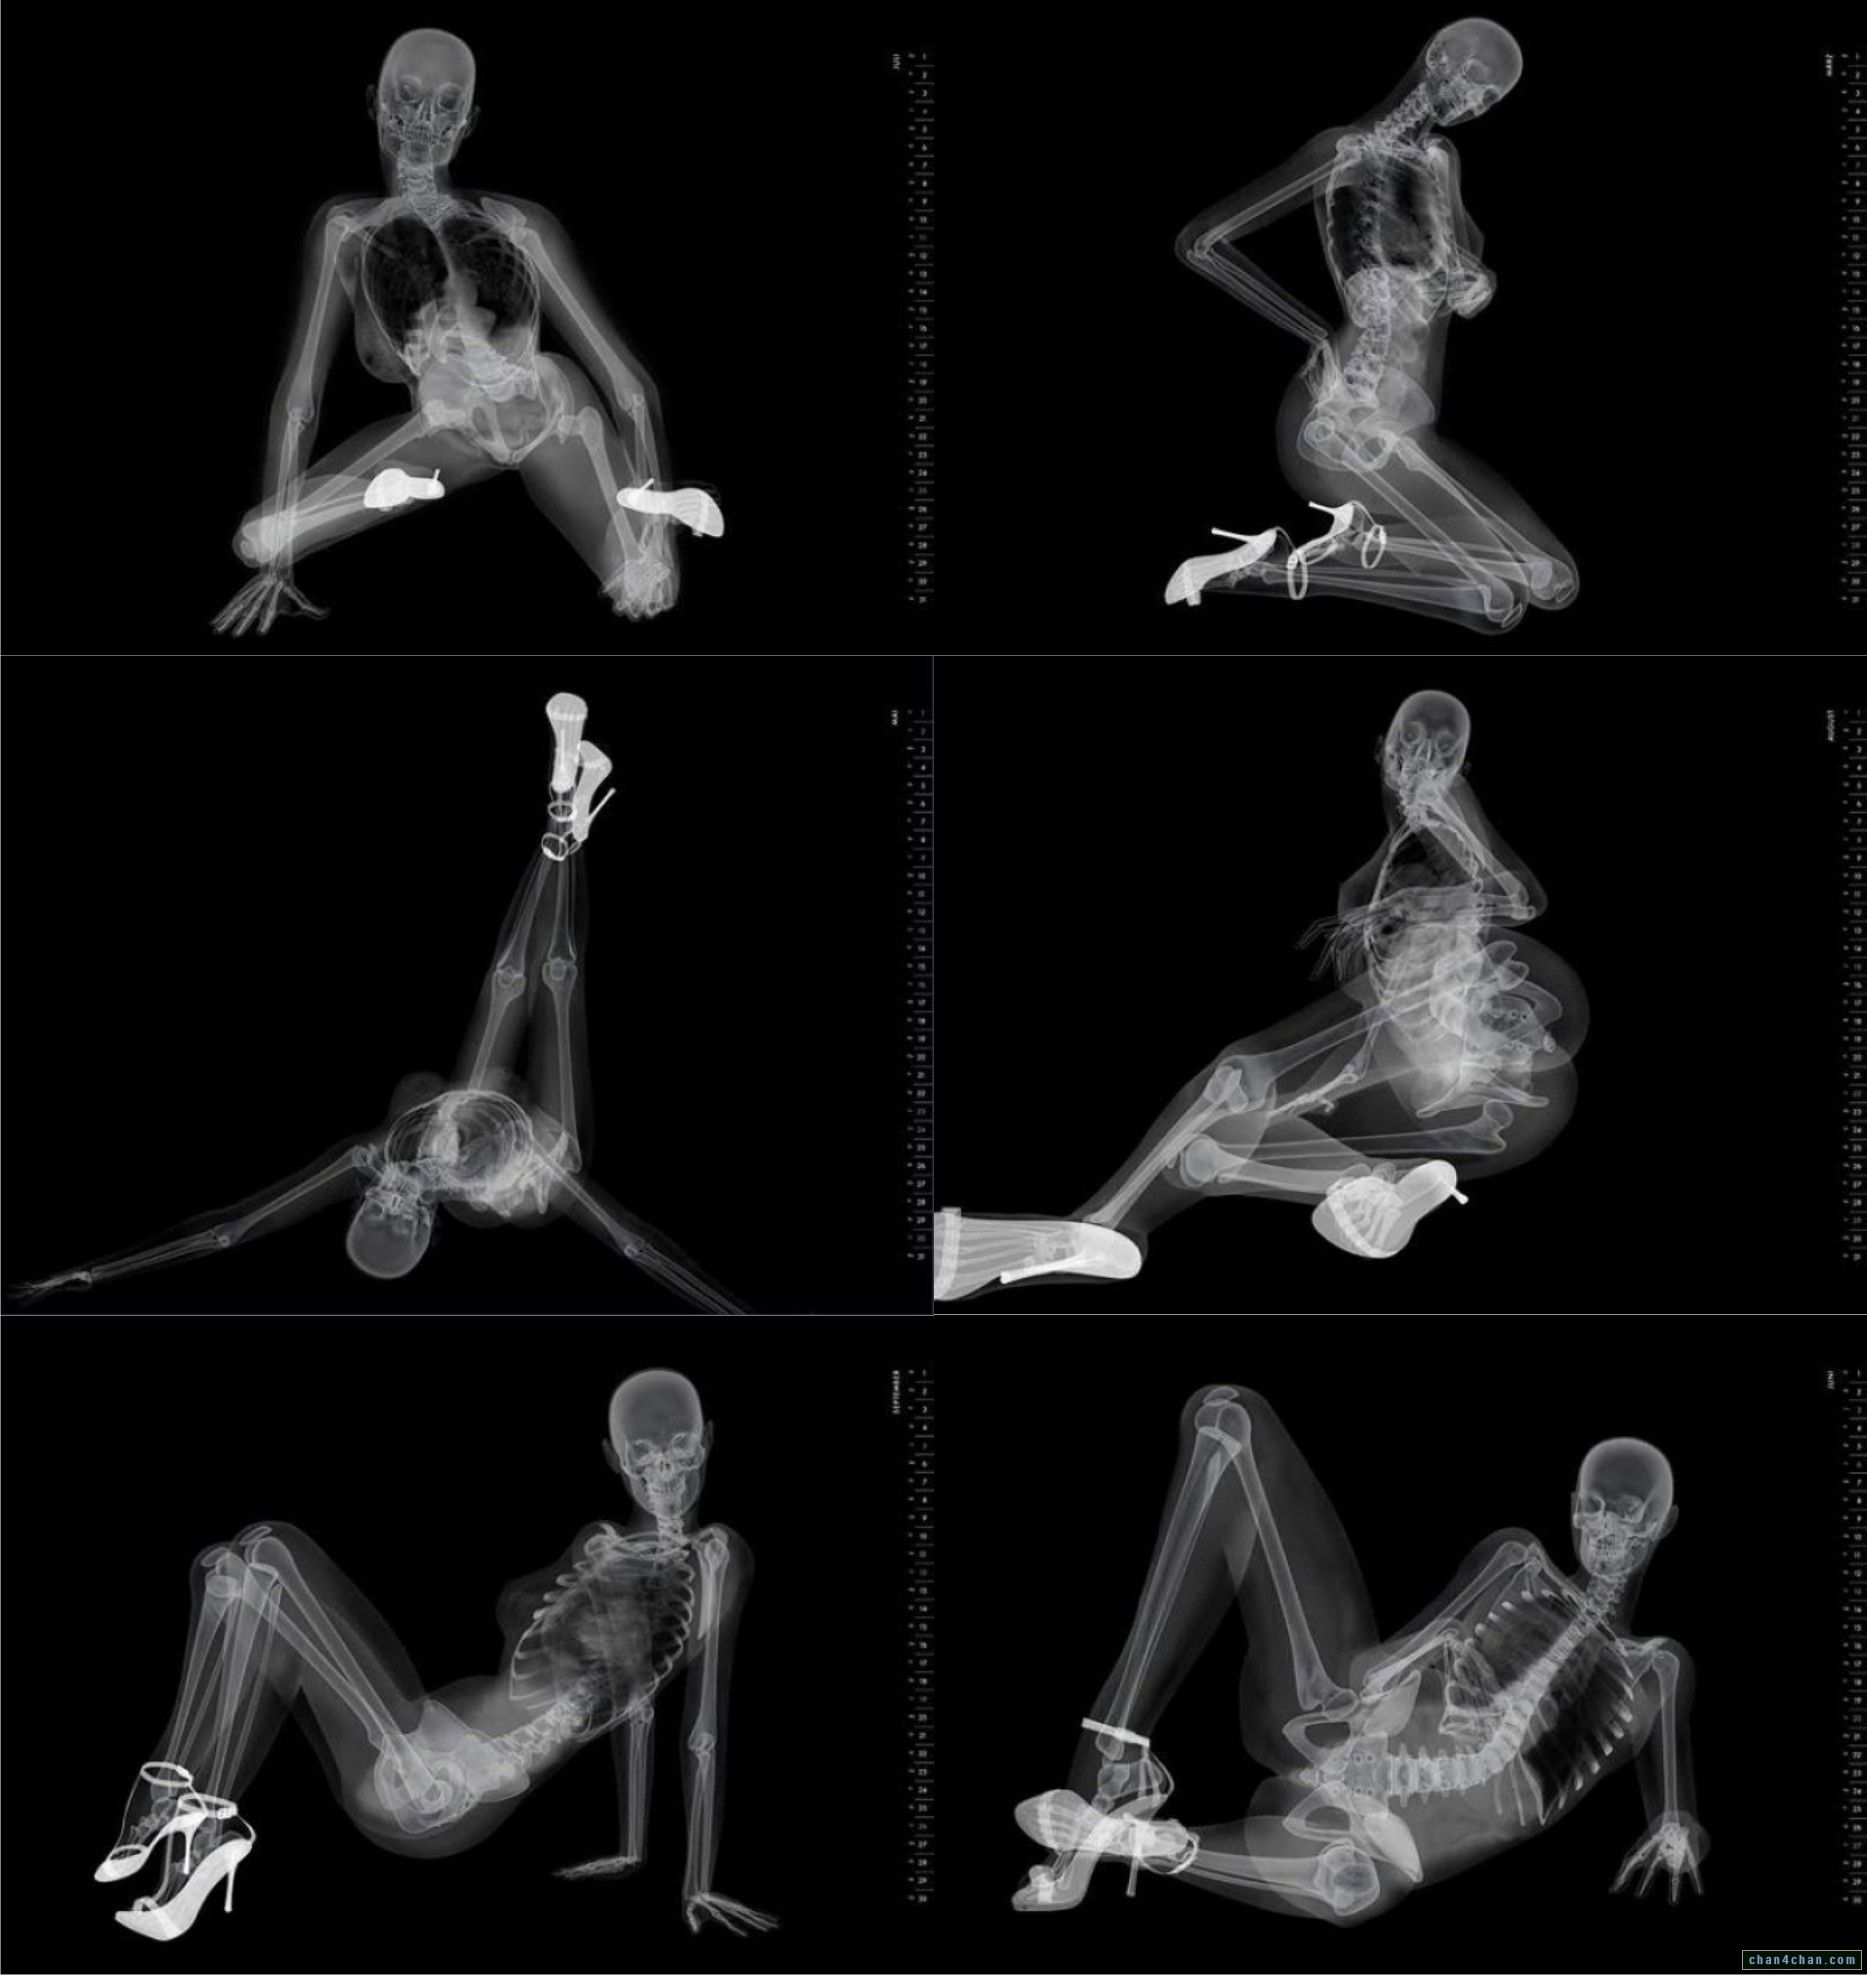 Porn Female Skeleton - Porn Skeleton Heels Ray - XXXPicss.com